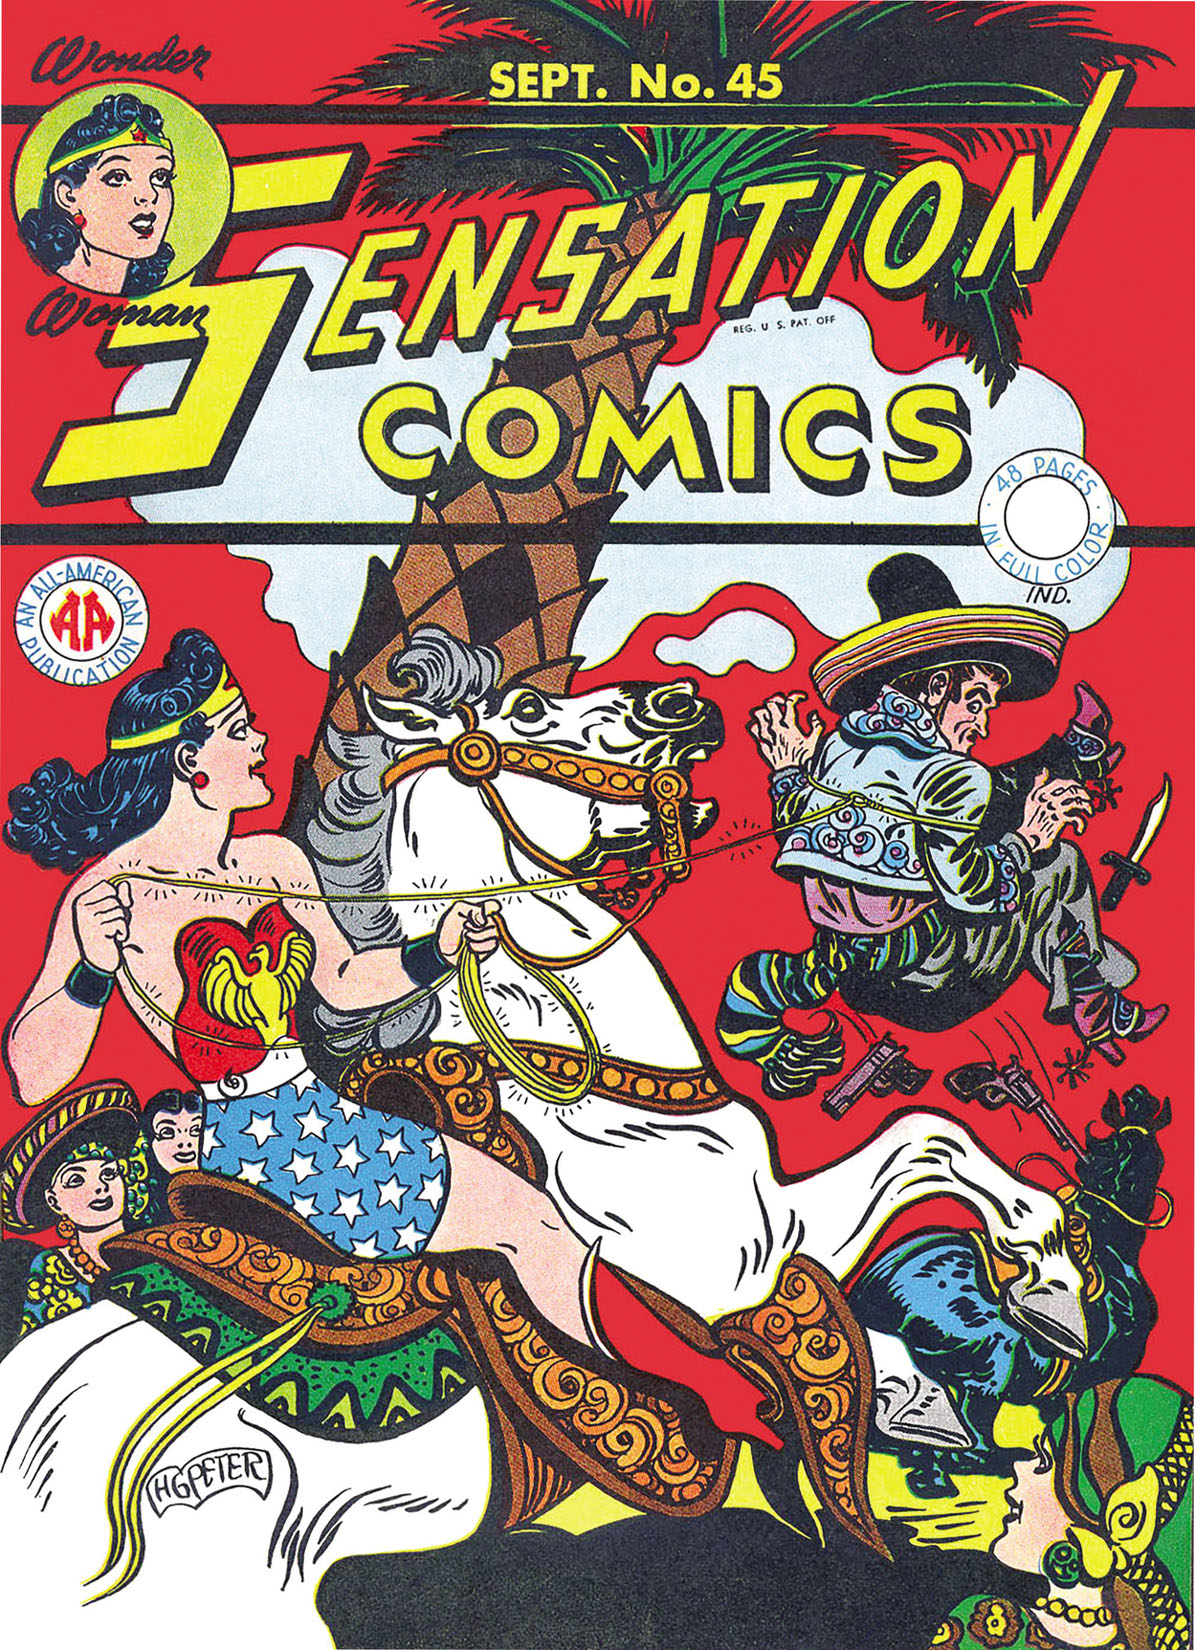 Sensation Comics #45 preview images